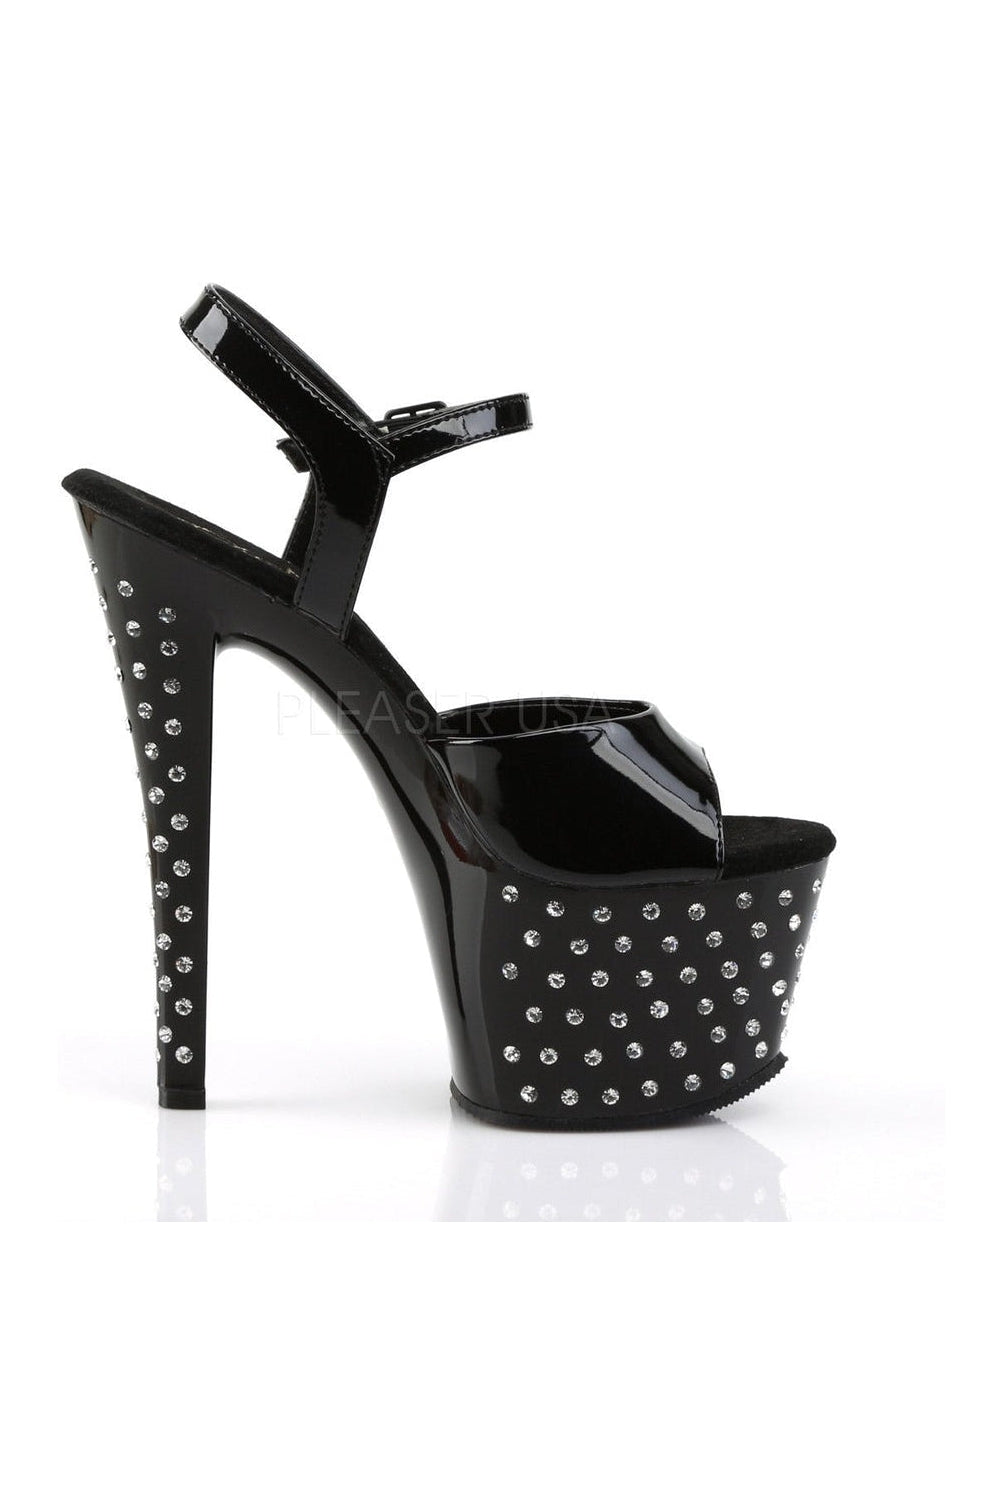 STARDUST-709 Platform Sandal | Black Patent-Pleaser-Sandals-SEXYSHOES.COM